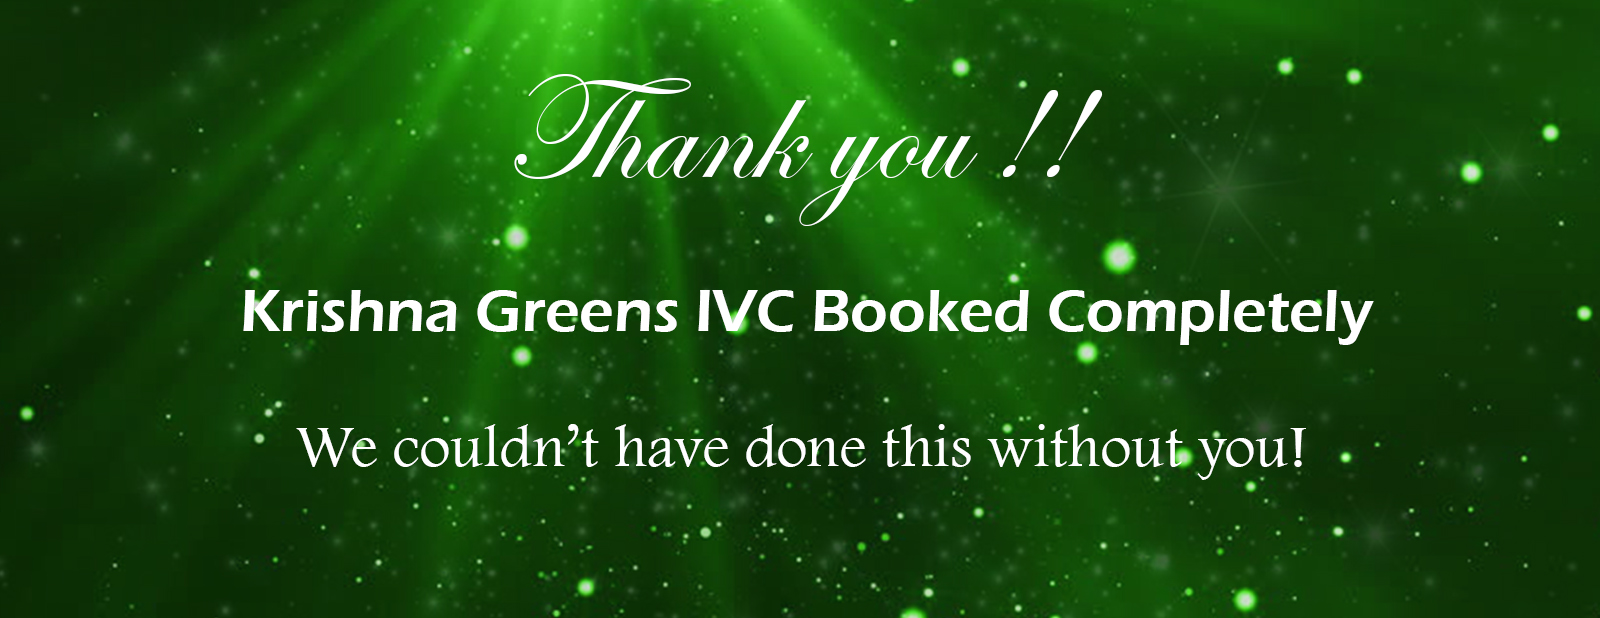 Krishna Greens IVC